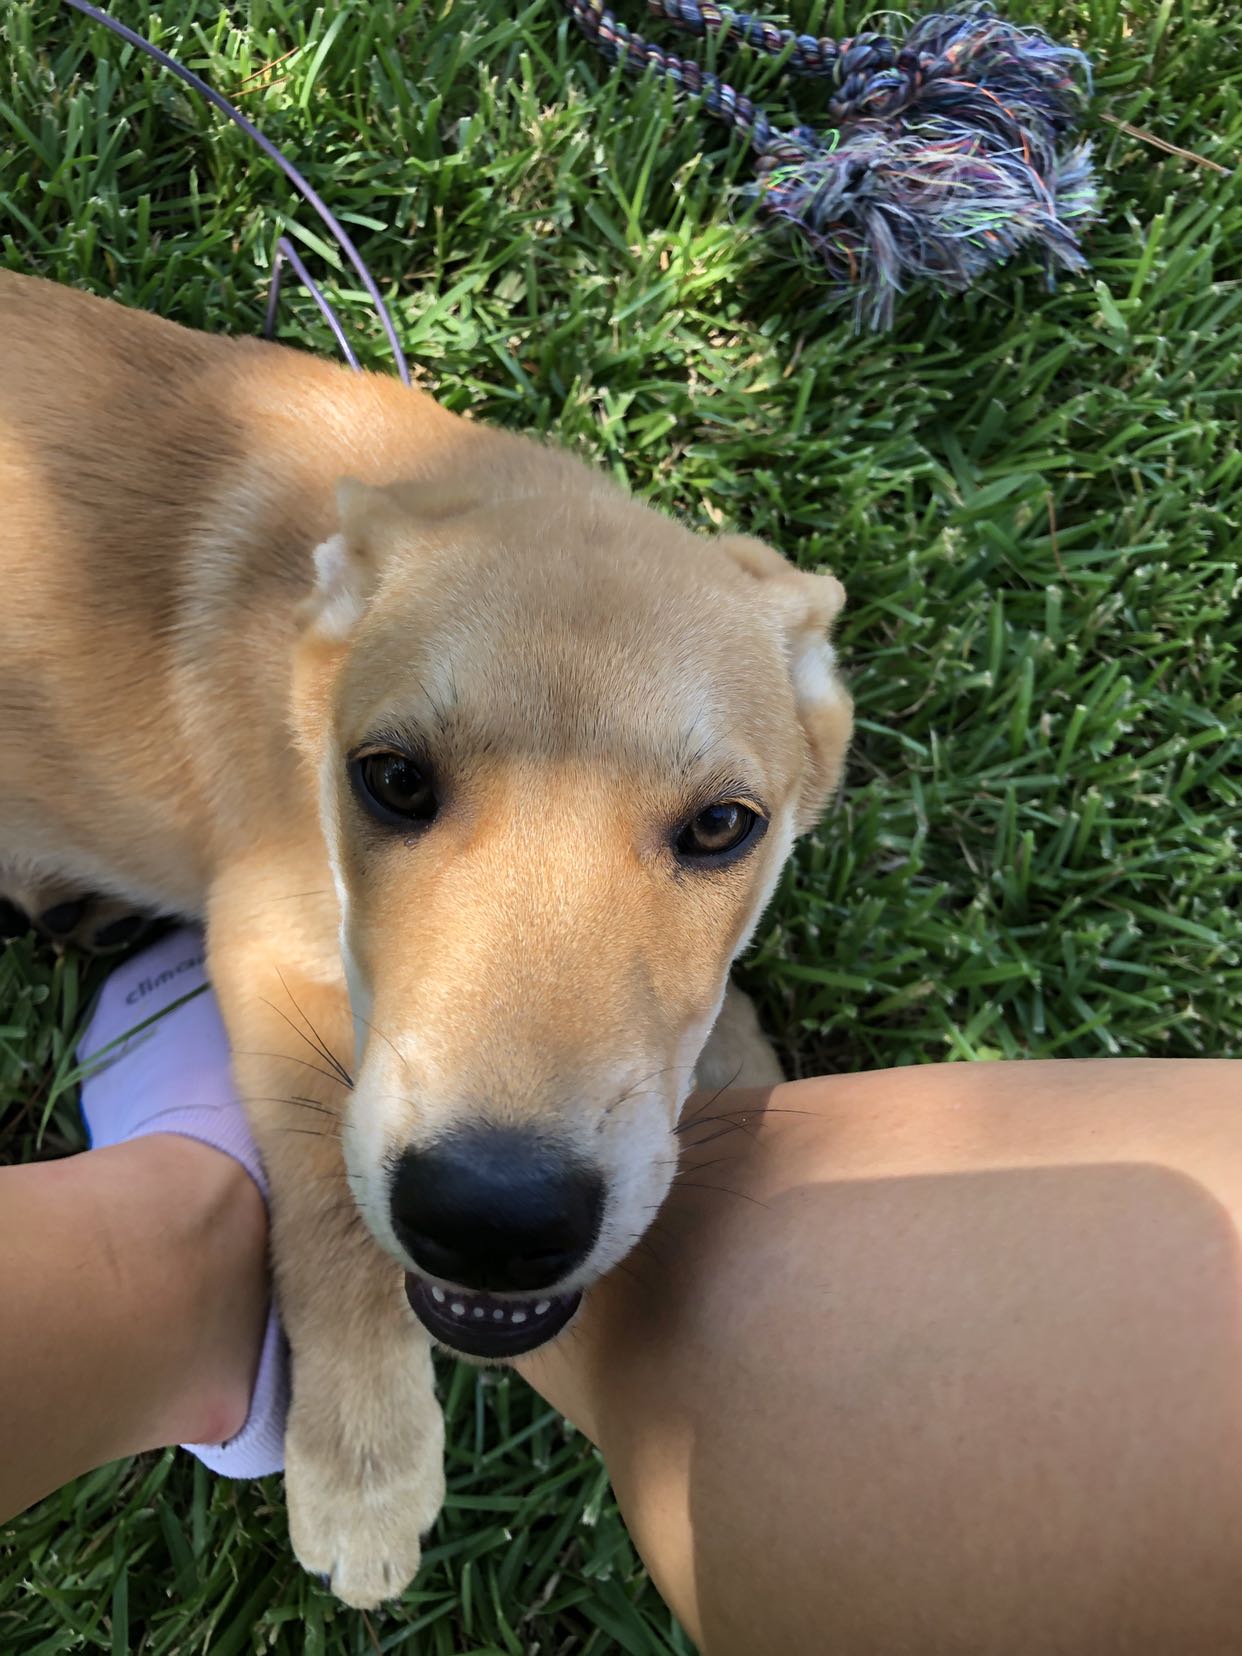 adoptable Dog in Waco,TX named Daisy